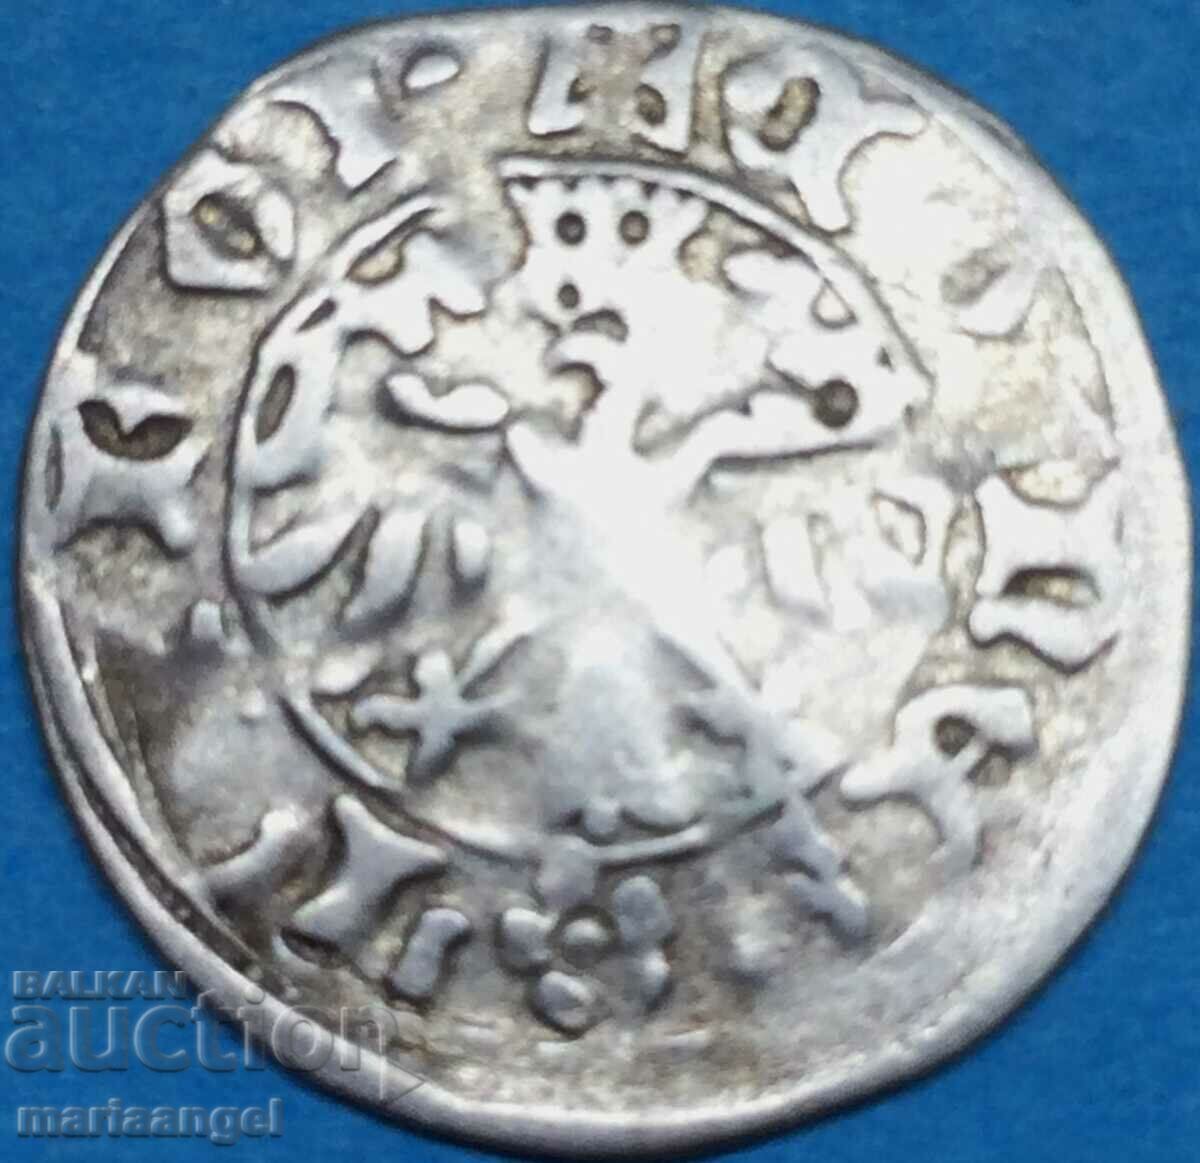 Австрия 1 кройцер Тирол Сигизмунд III сребро